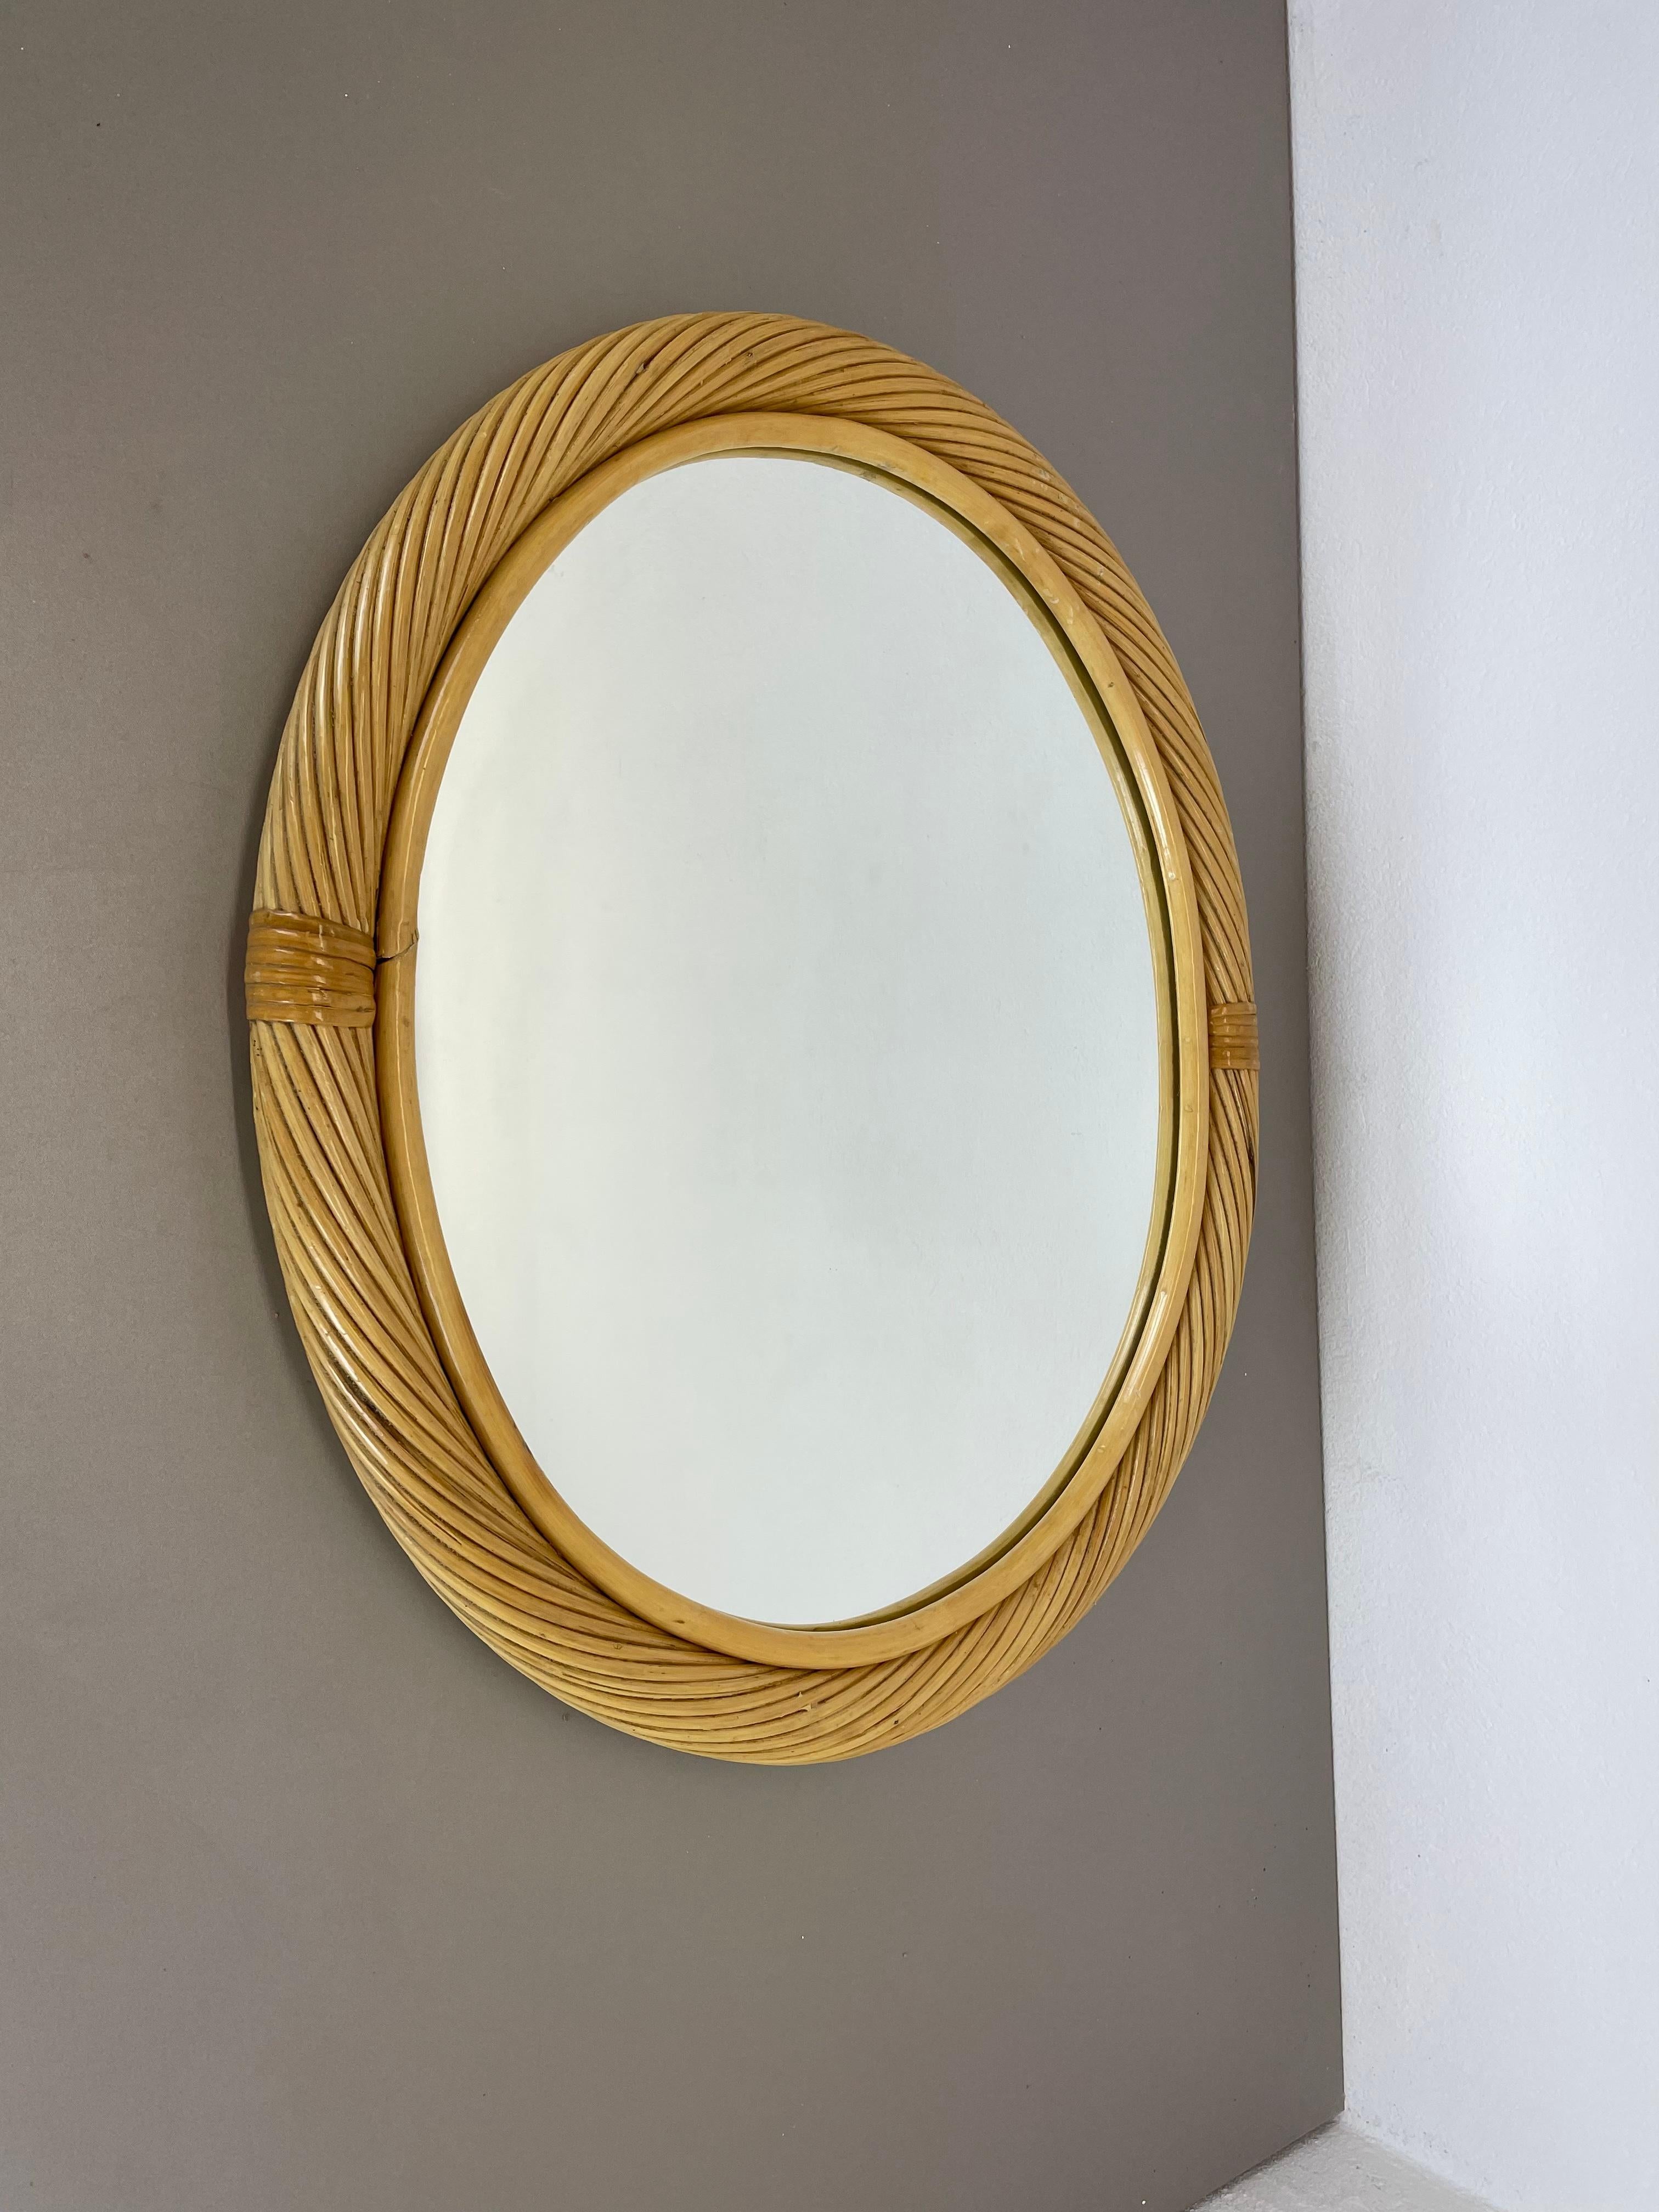 Artikel:

Spiegel


Herkunft:

Italien


Design/One:

Im Stil von Franco Albini und Gabriella Crespi



Alter:

1970s


Beschreibung:

Dieser originelle Vintage-Spiegel wurde in den 1970er Jahren in Italien entworfen und hergestellt. Das Spiegelglas